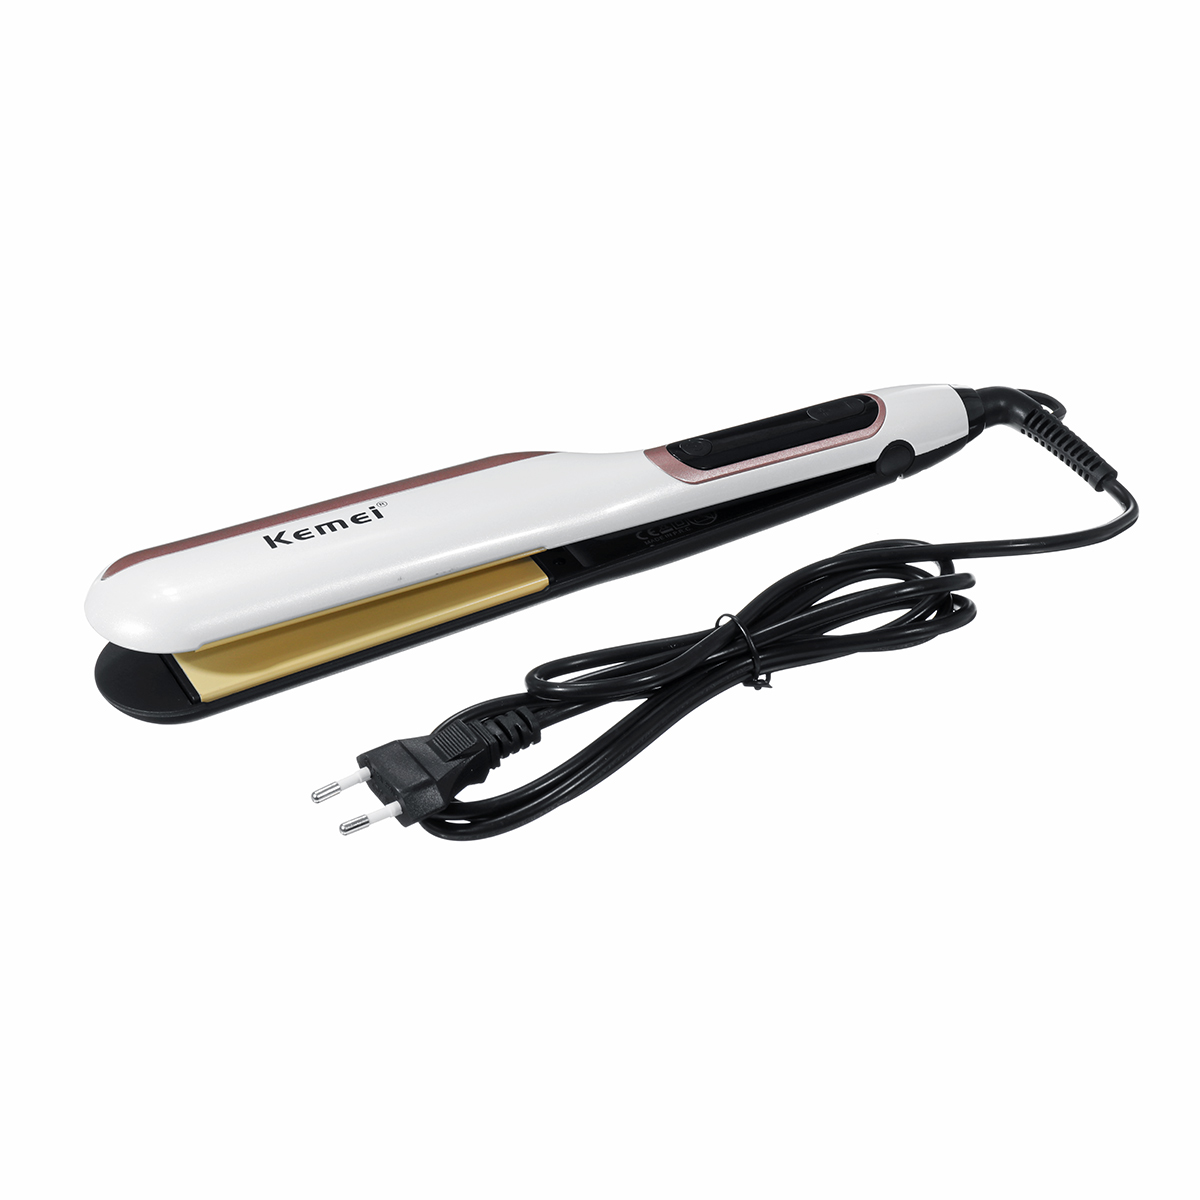 

KM-9622 Professional Керамический Электрический обогреватель Волосы Выпрямитель LED Дисплей Dry & Wet Волосы Выпрямитель